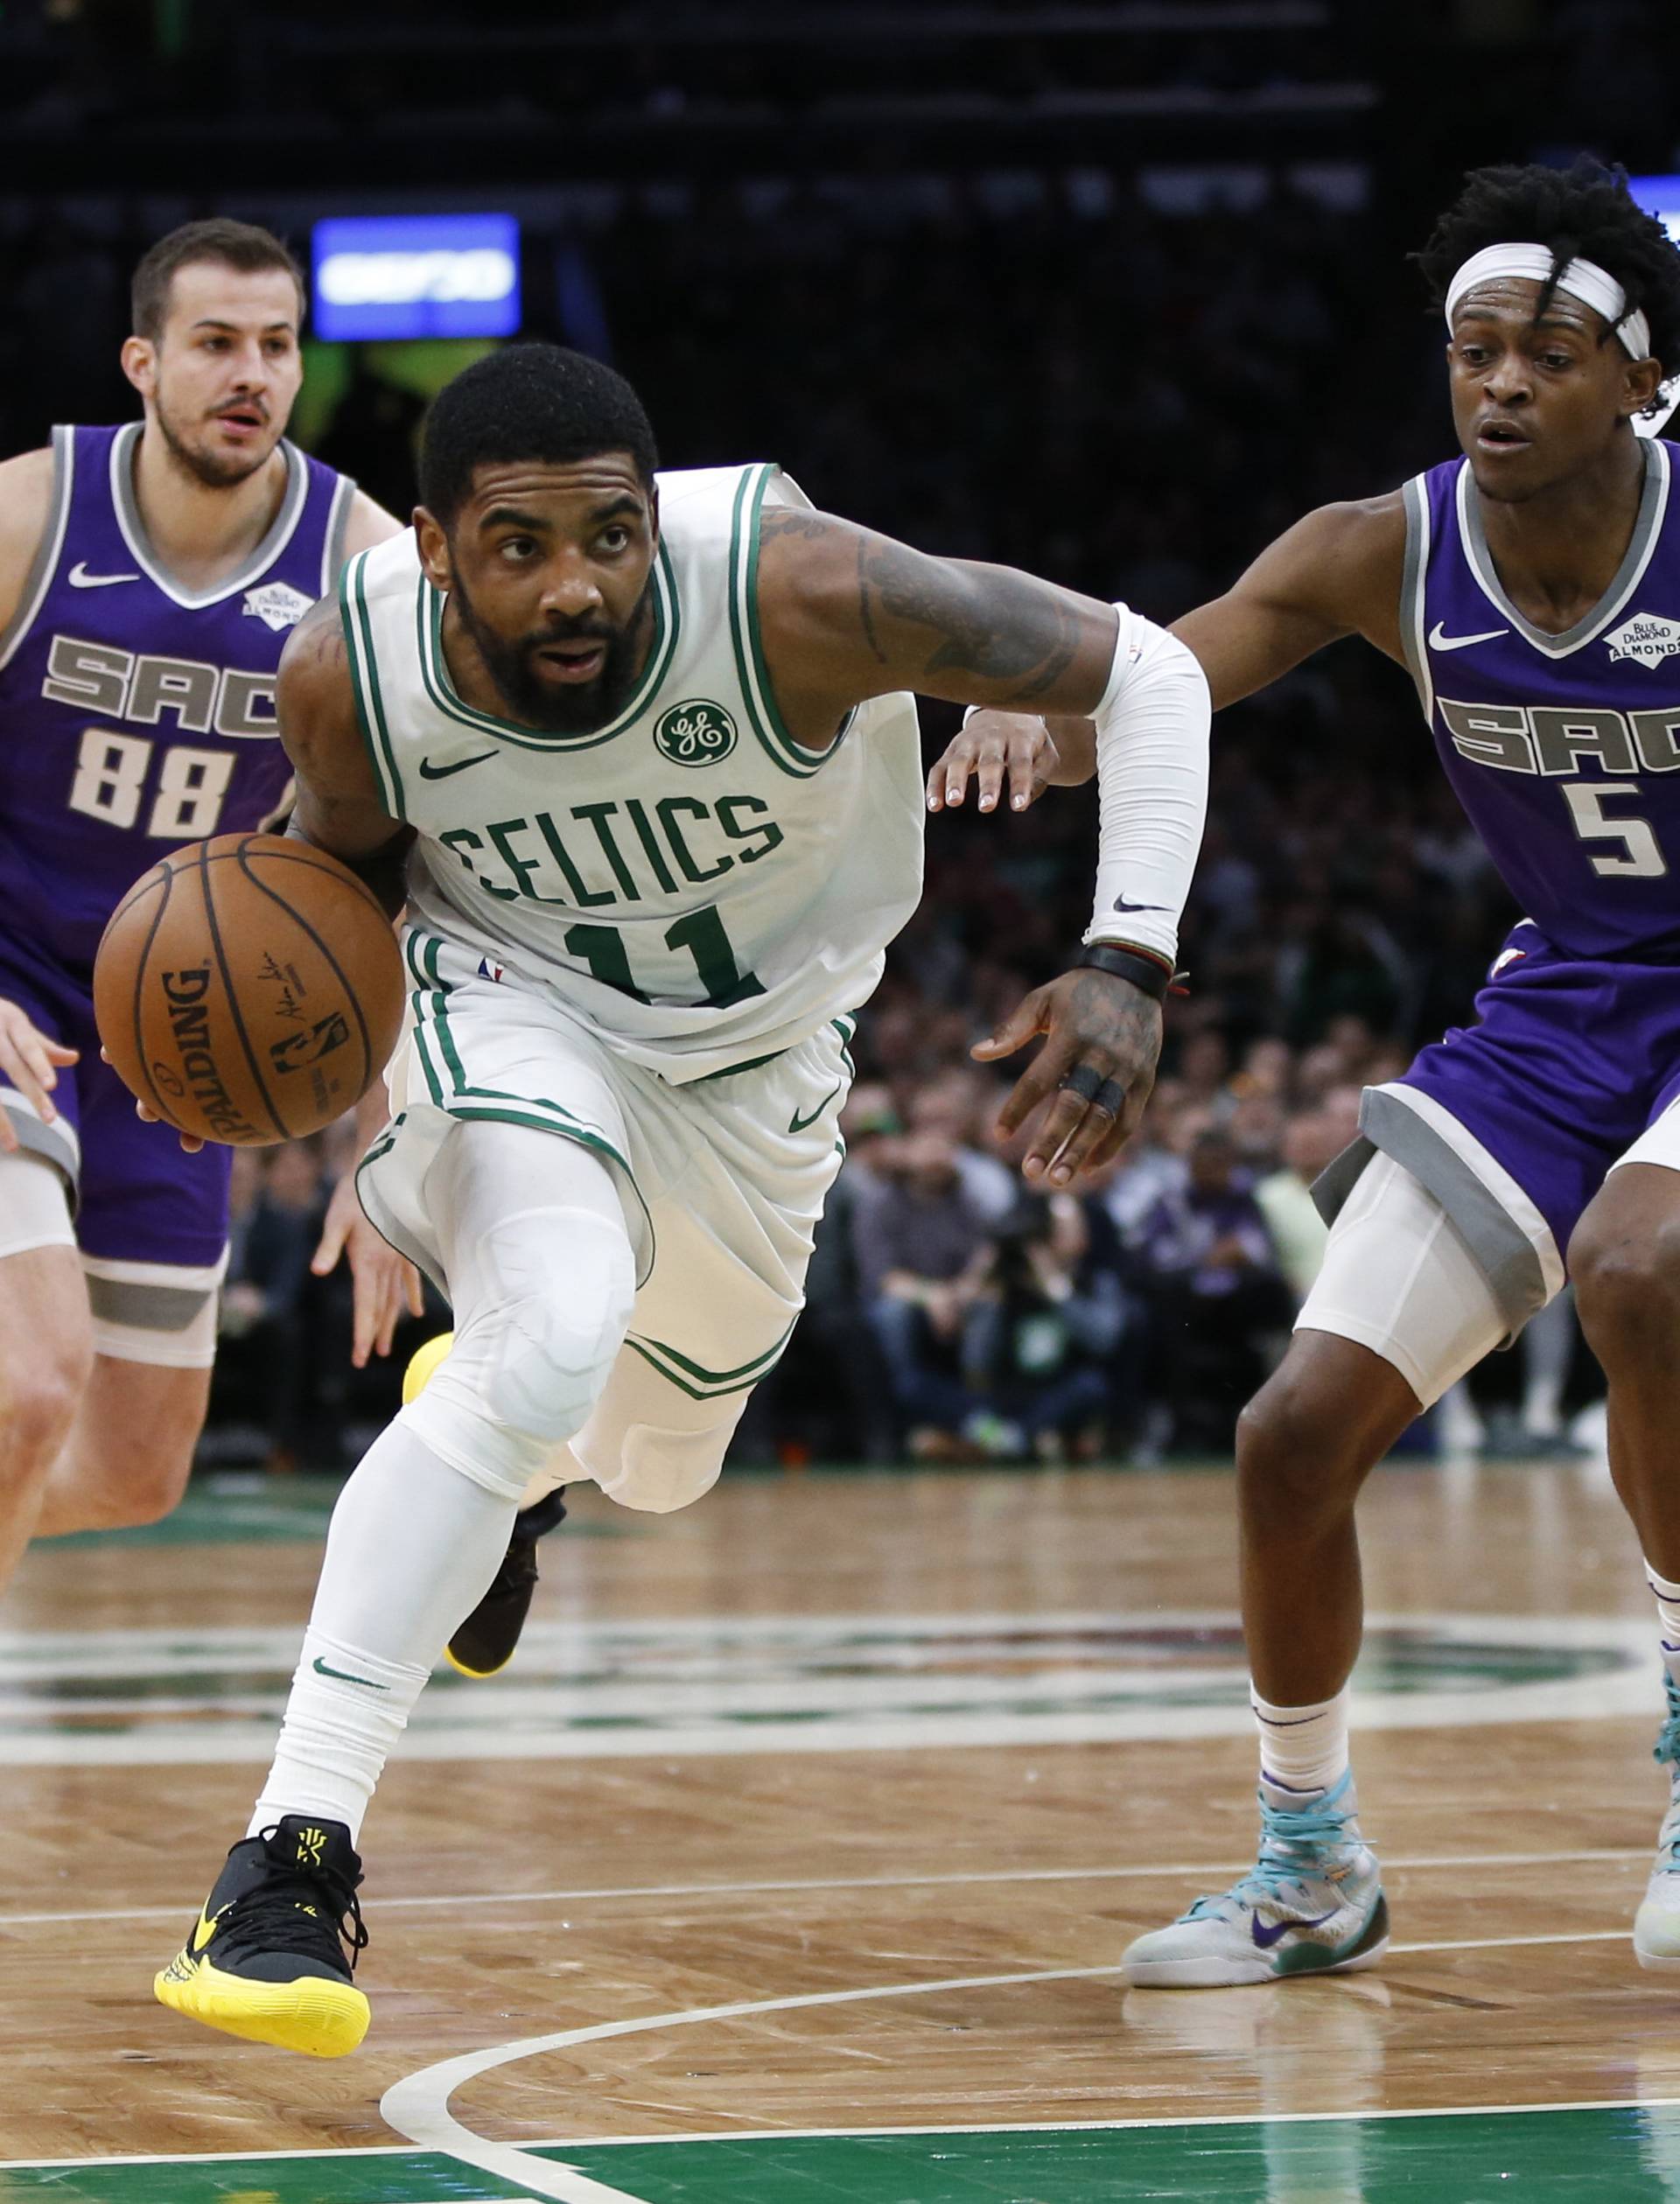 NBA: Sacramento Kings at Boston Celtics